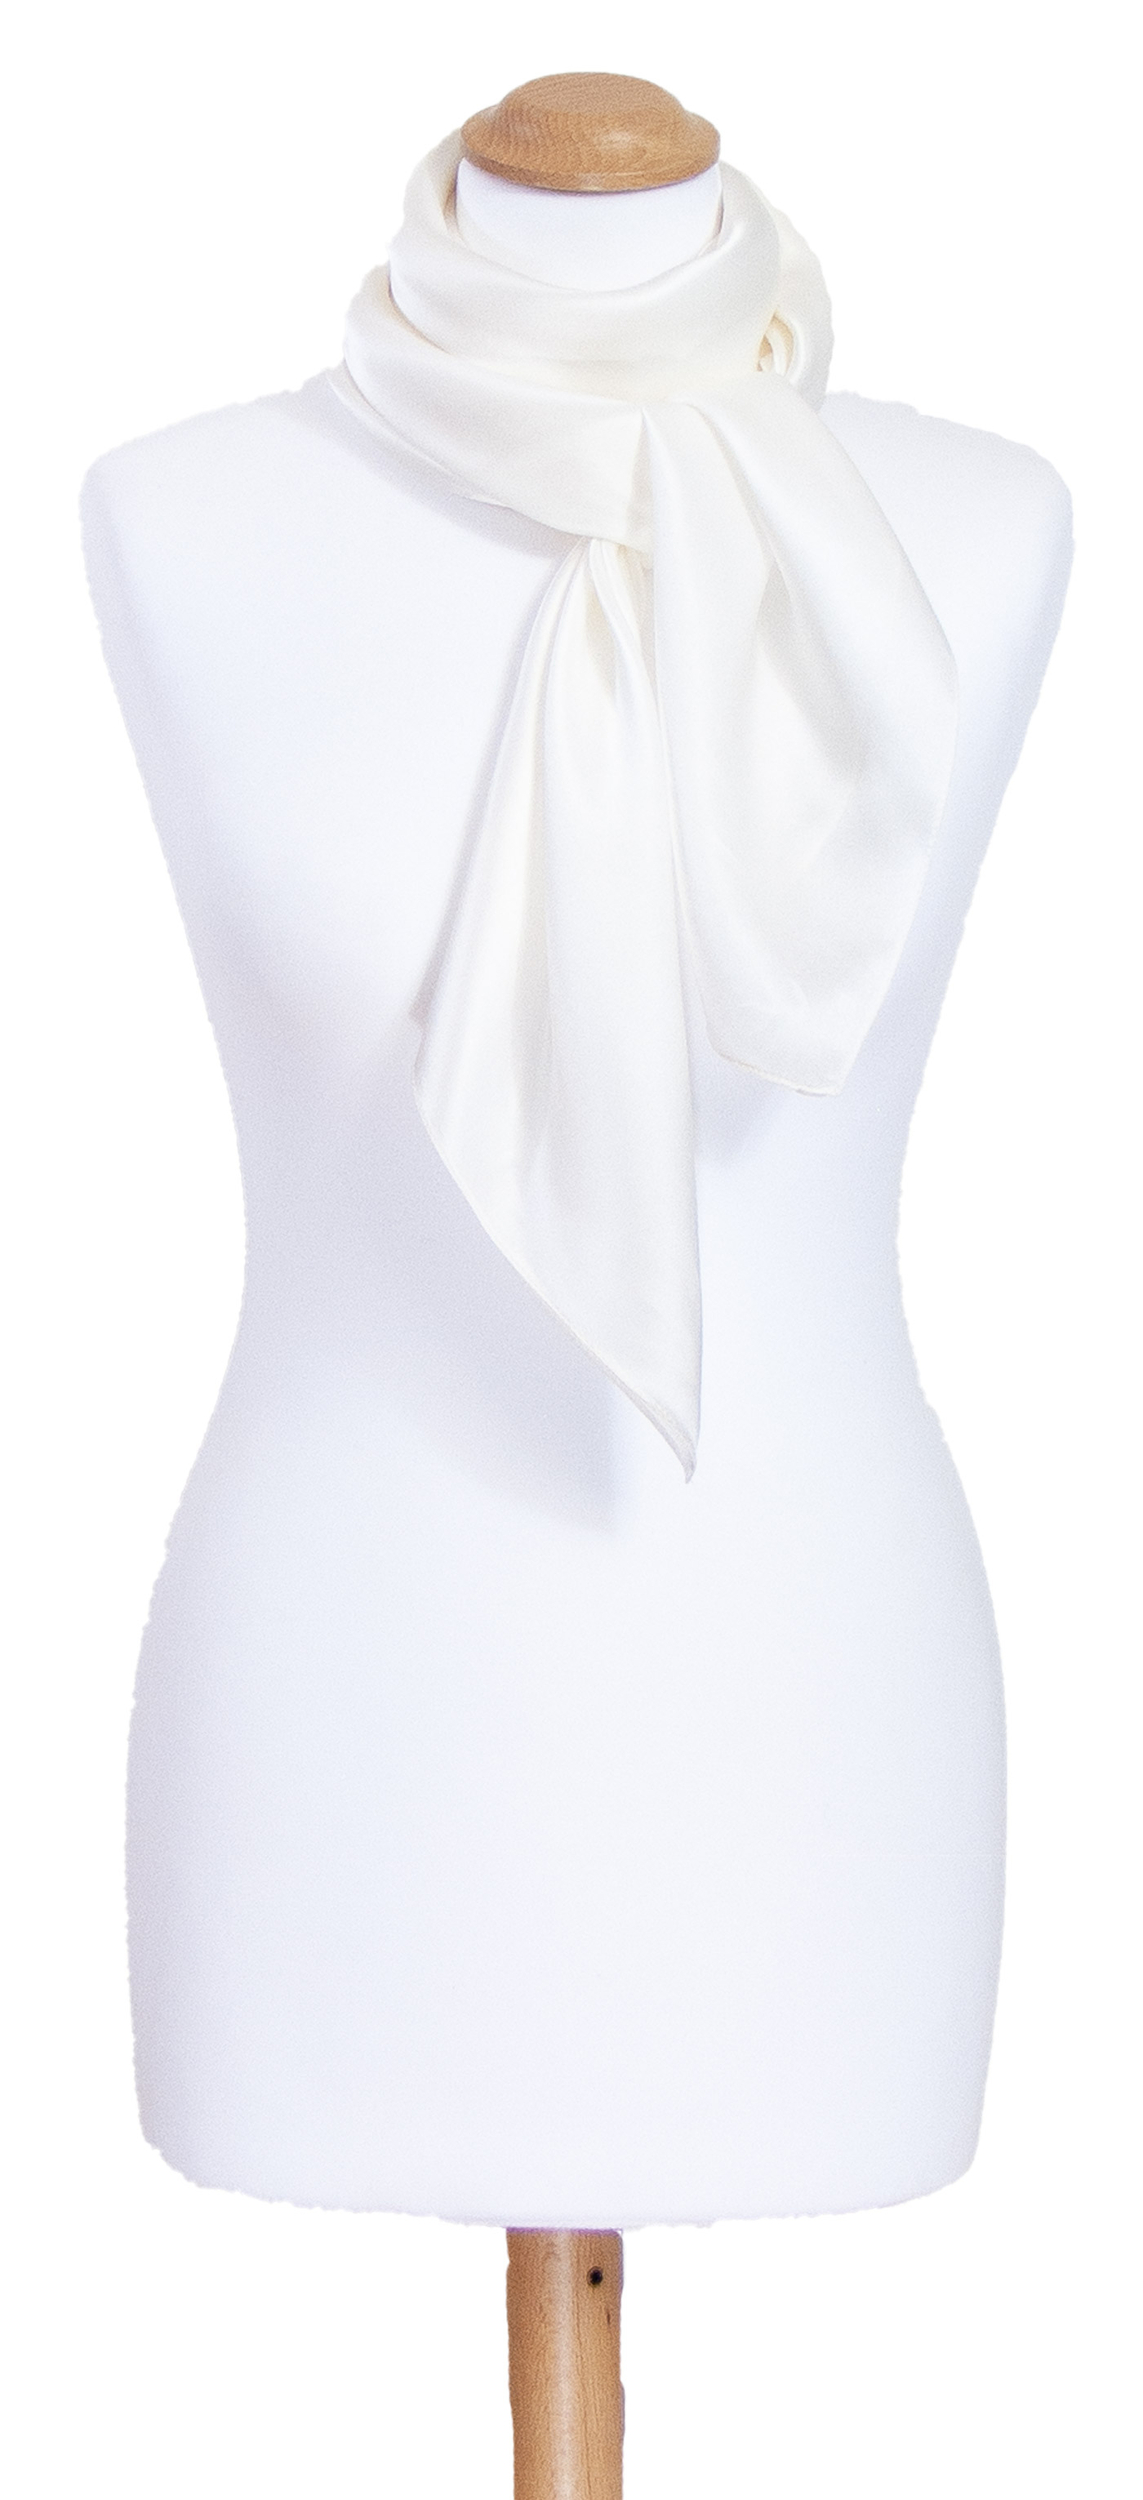 Foulard carré en soie blanc uni 110 cm